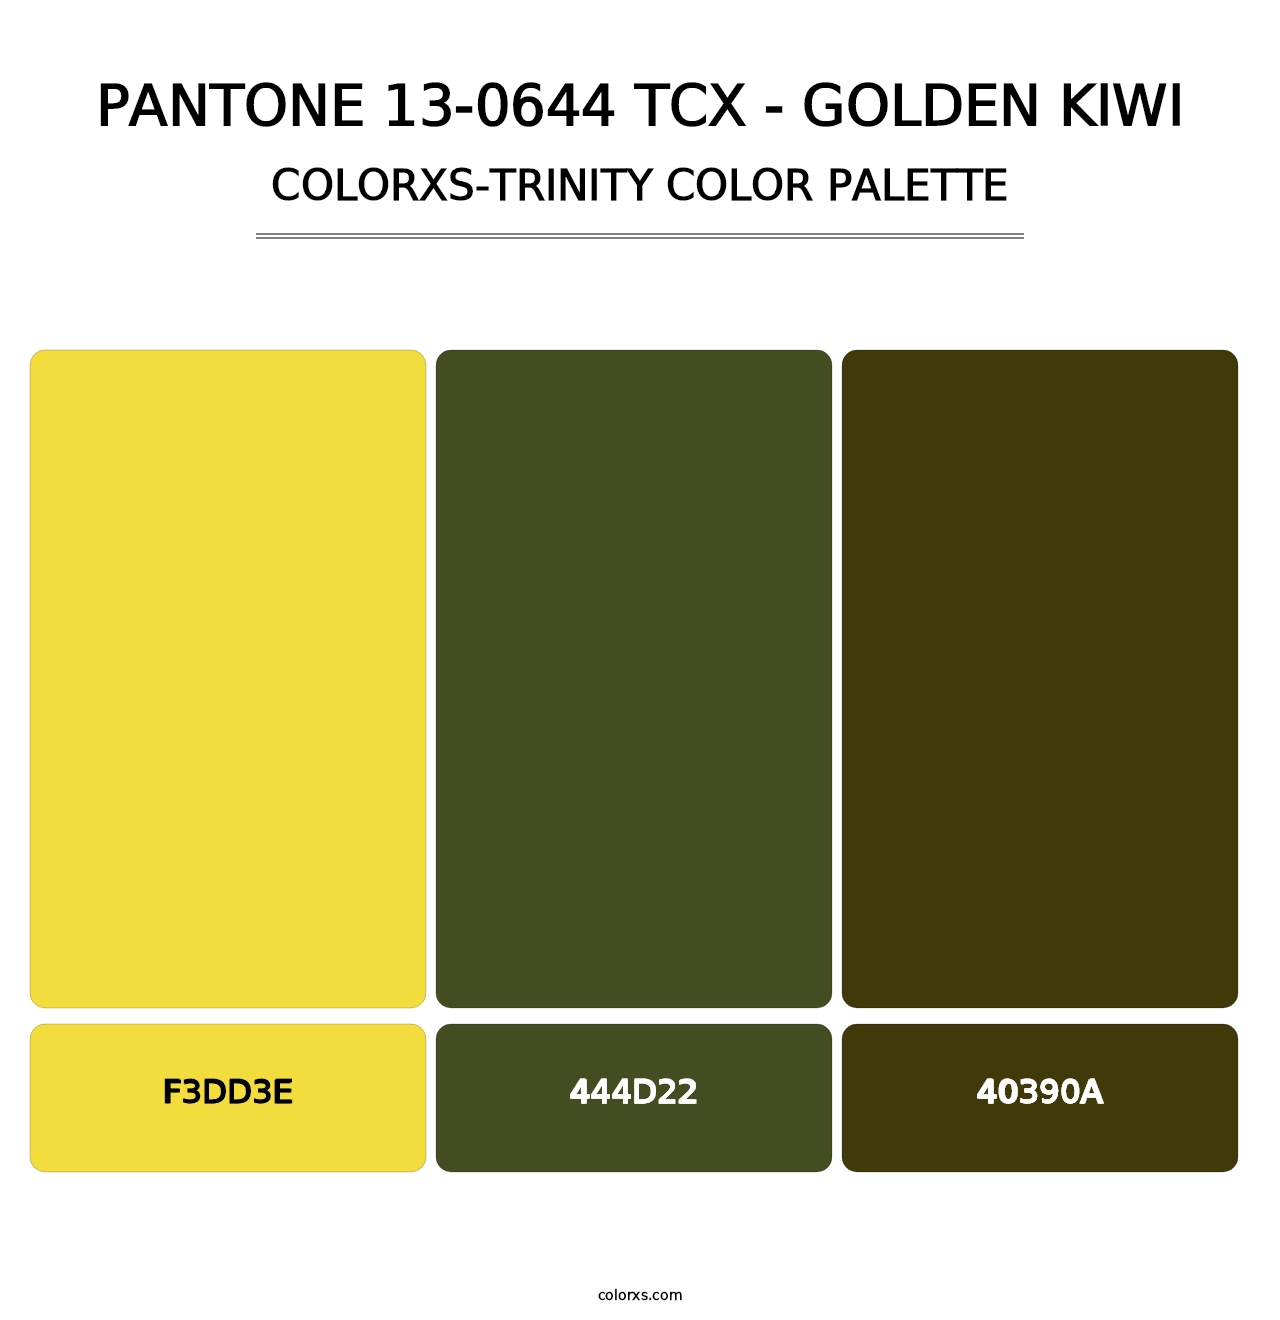 PANTONE 13-0644 TCX - Golden Kiwi - Colorxs Trinity Palette